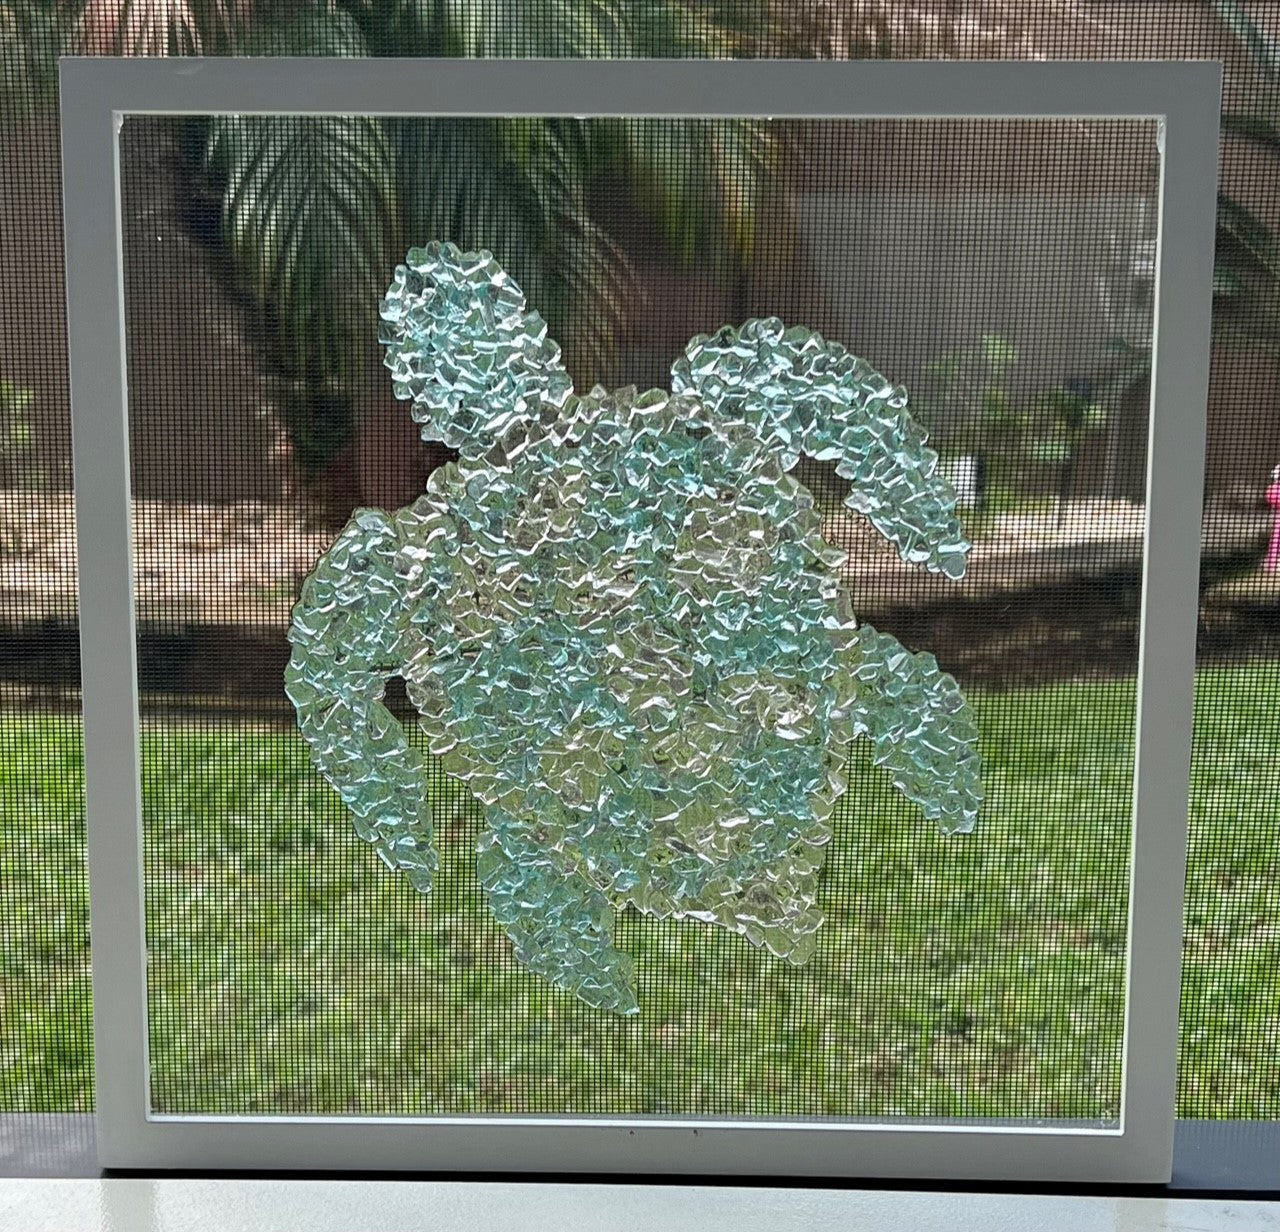 Sea Turtle on Glass